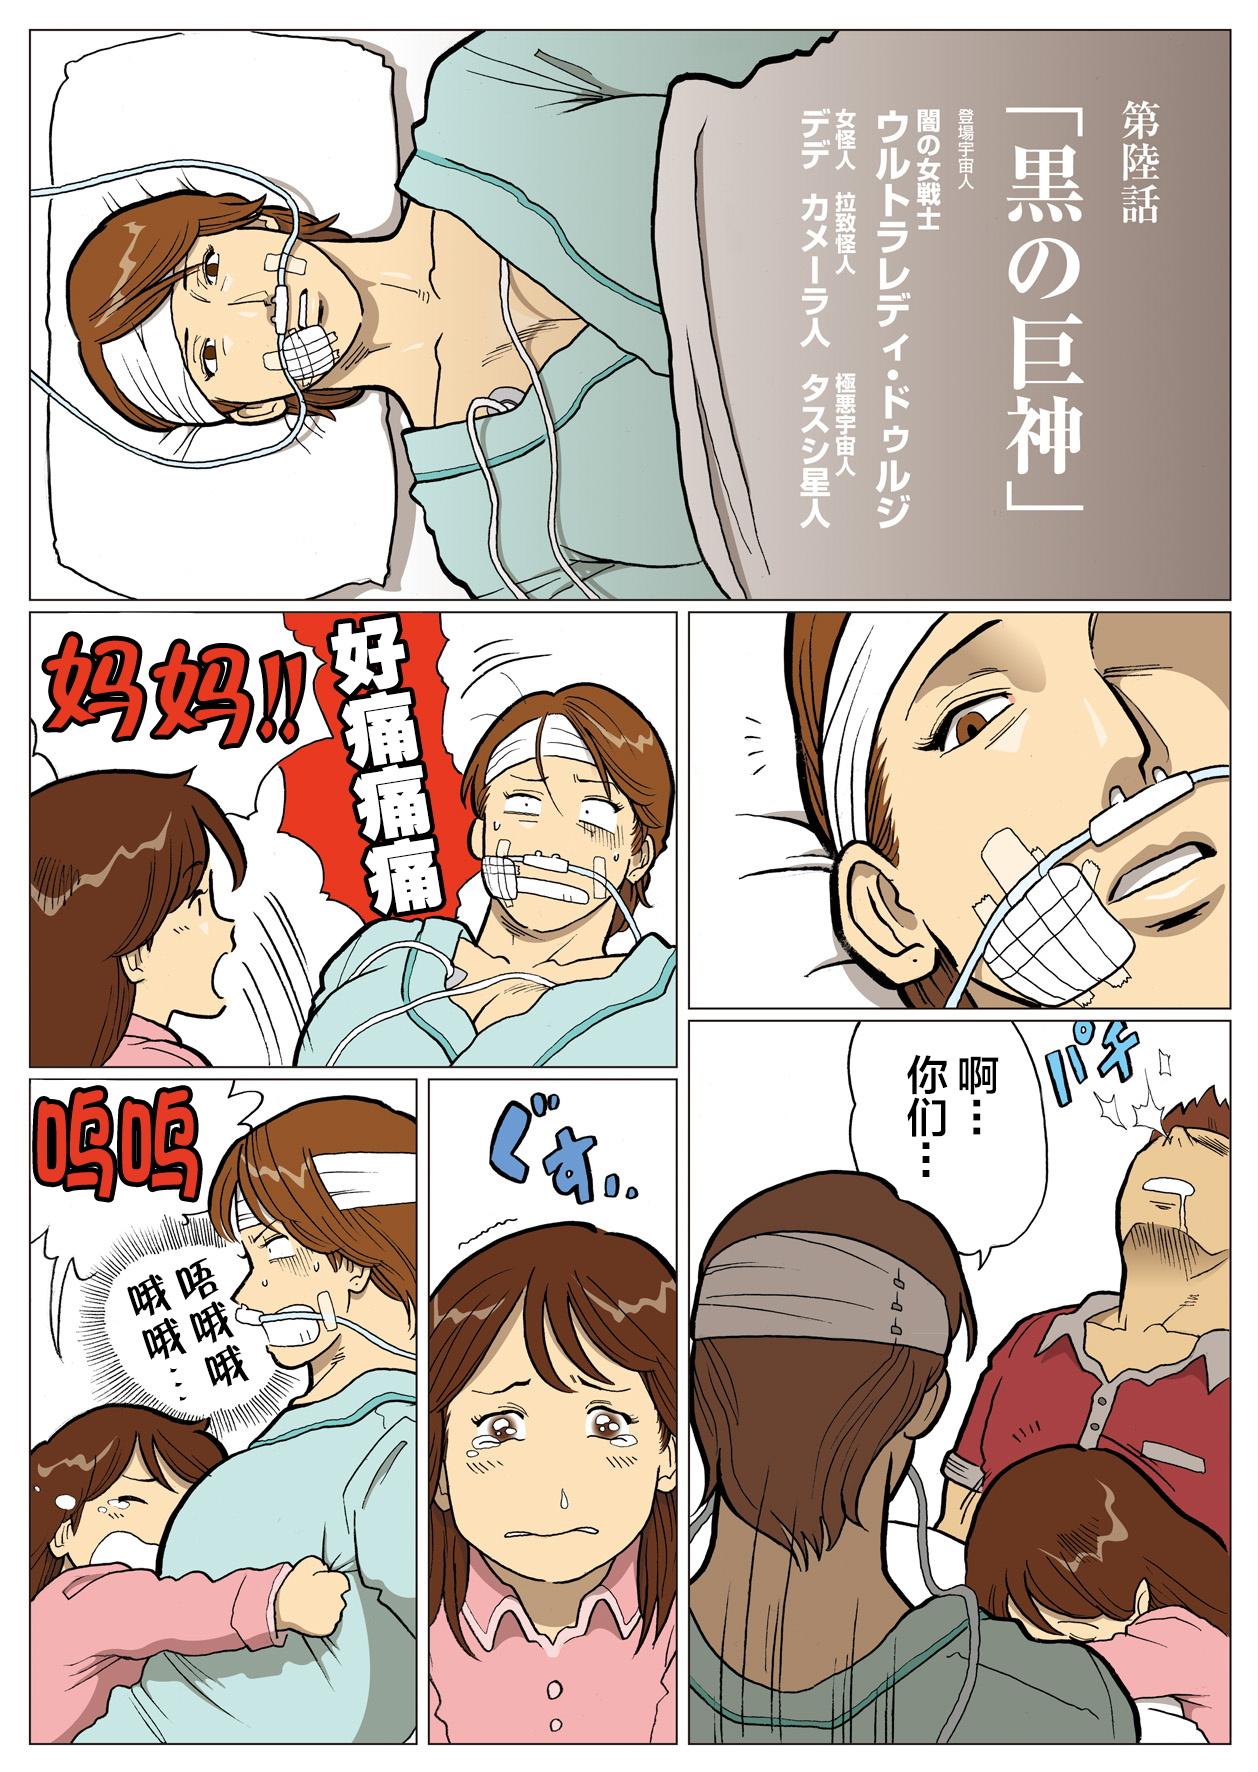 Cums Mousou Tokusatsu Series: Ultra Madam 6 - Ultraman Cam - Page 2